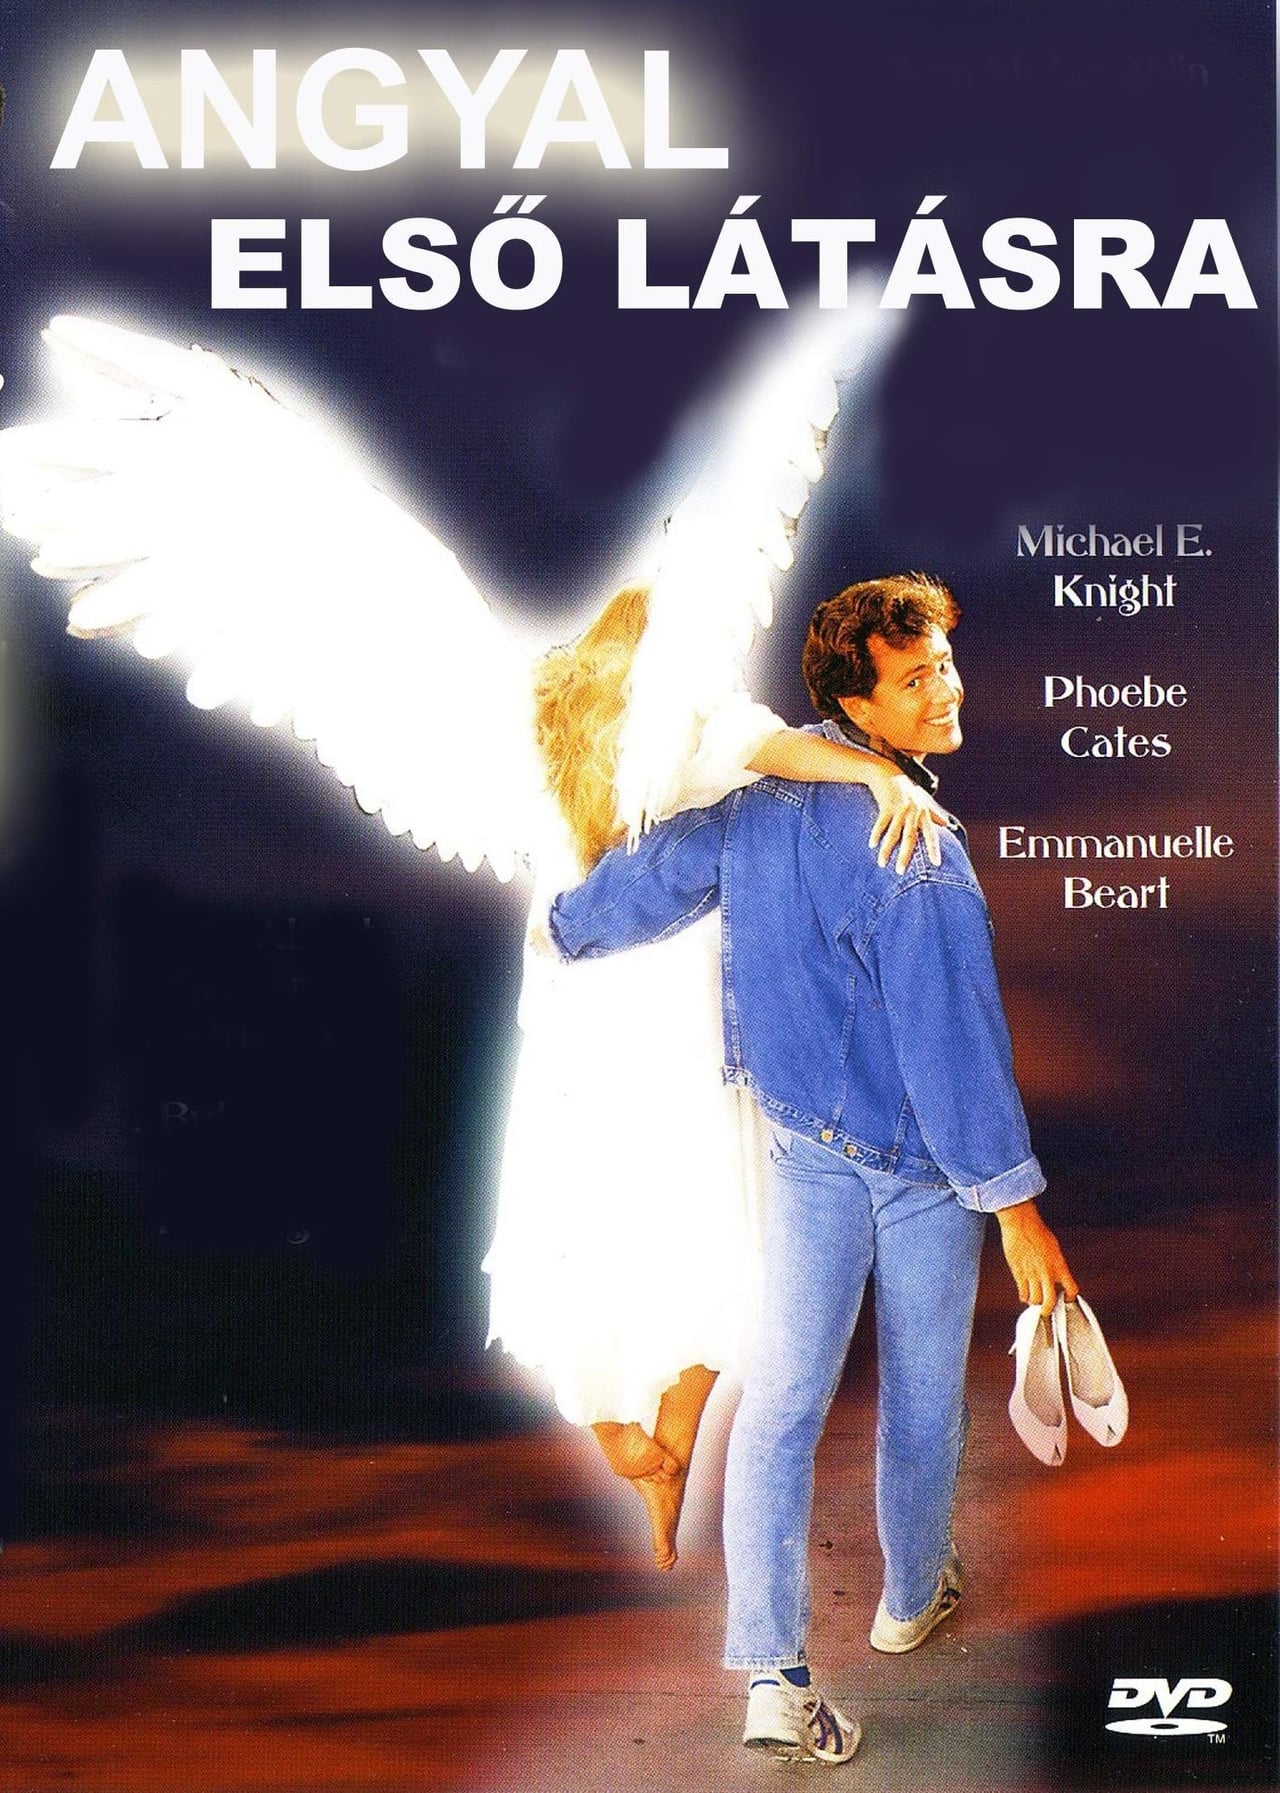 Angyal első látásra online teljes film (1987) 